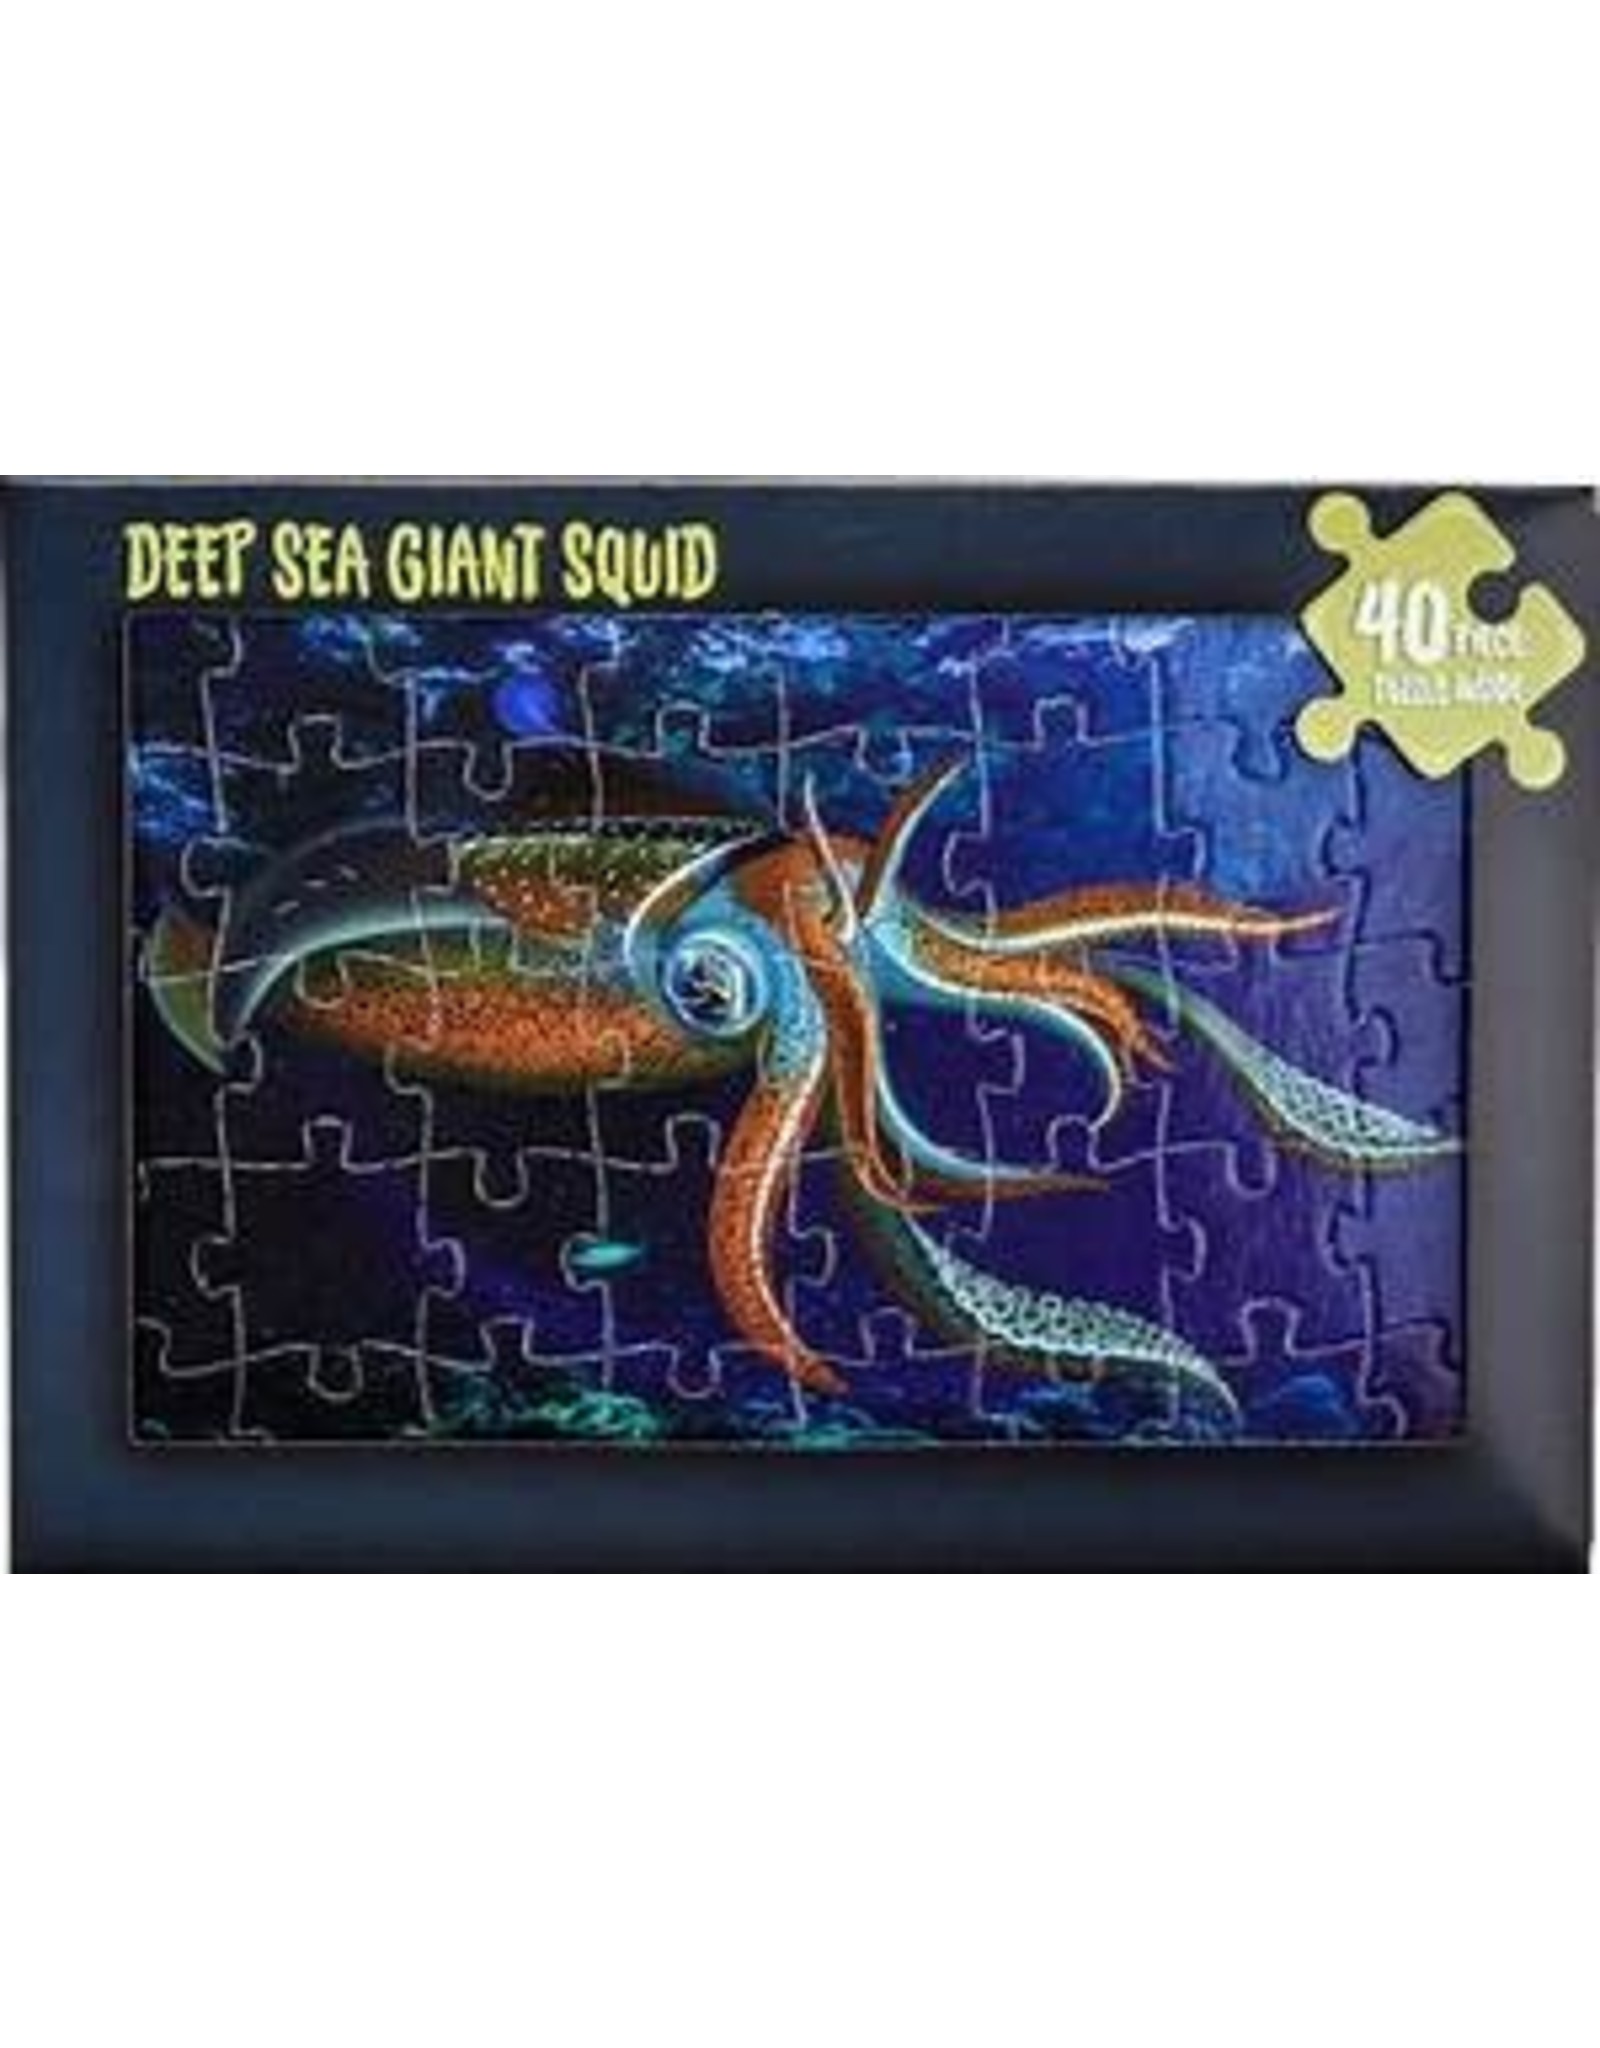 The Squid Jigsaw Card